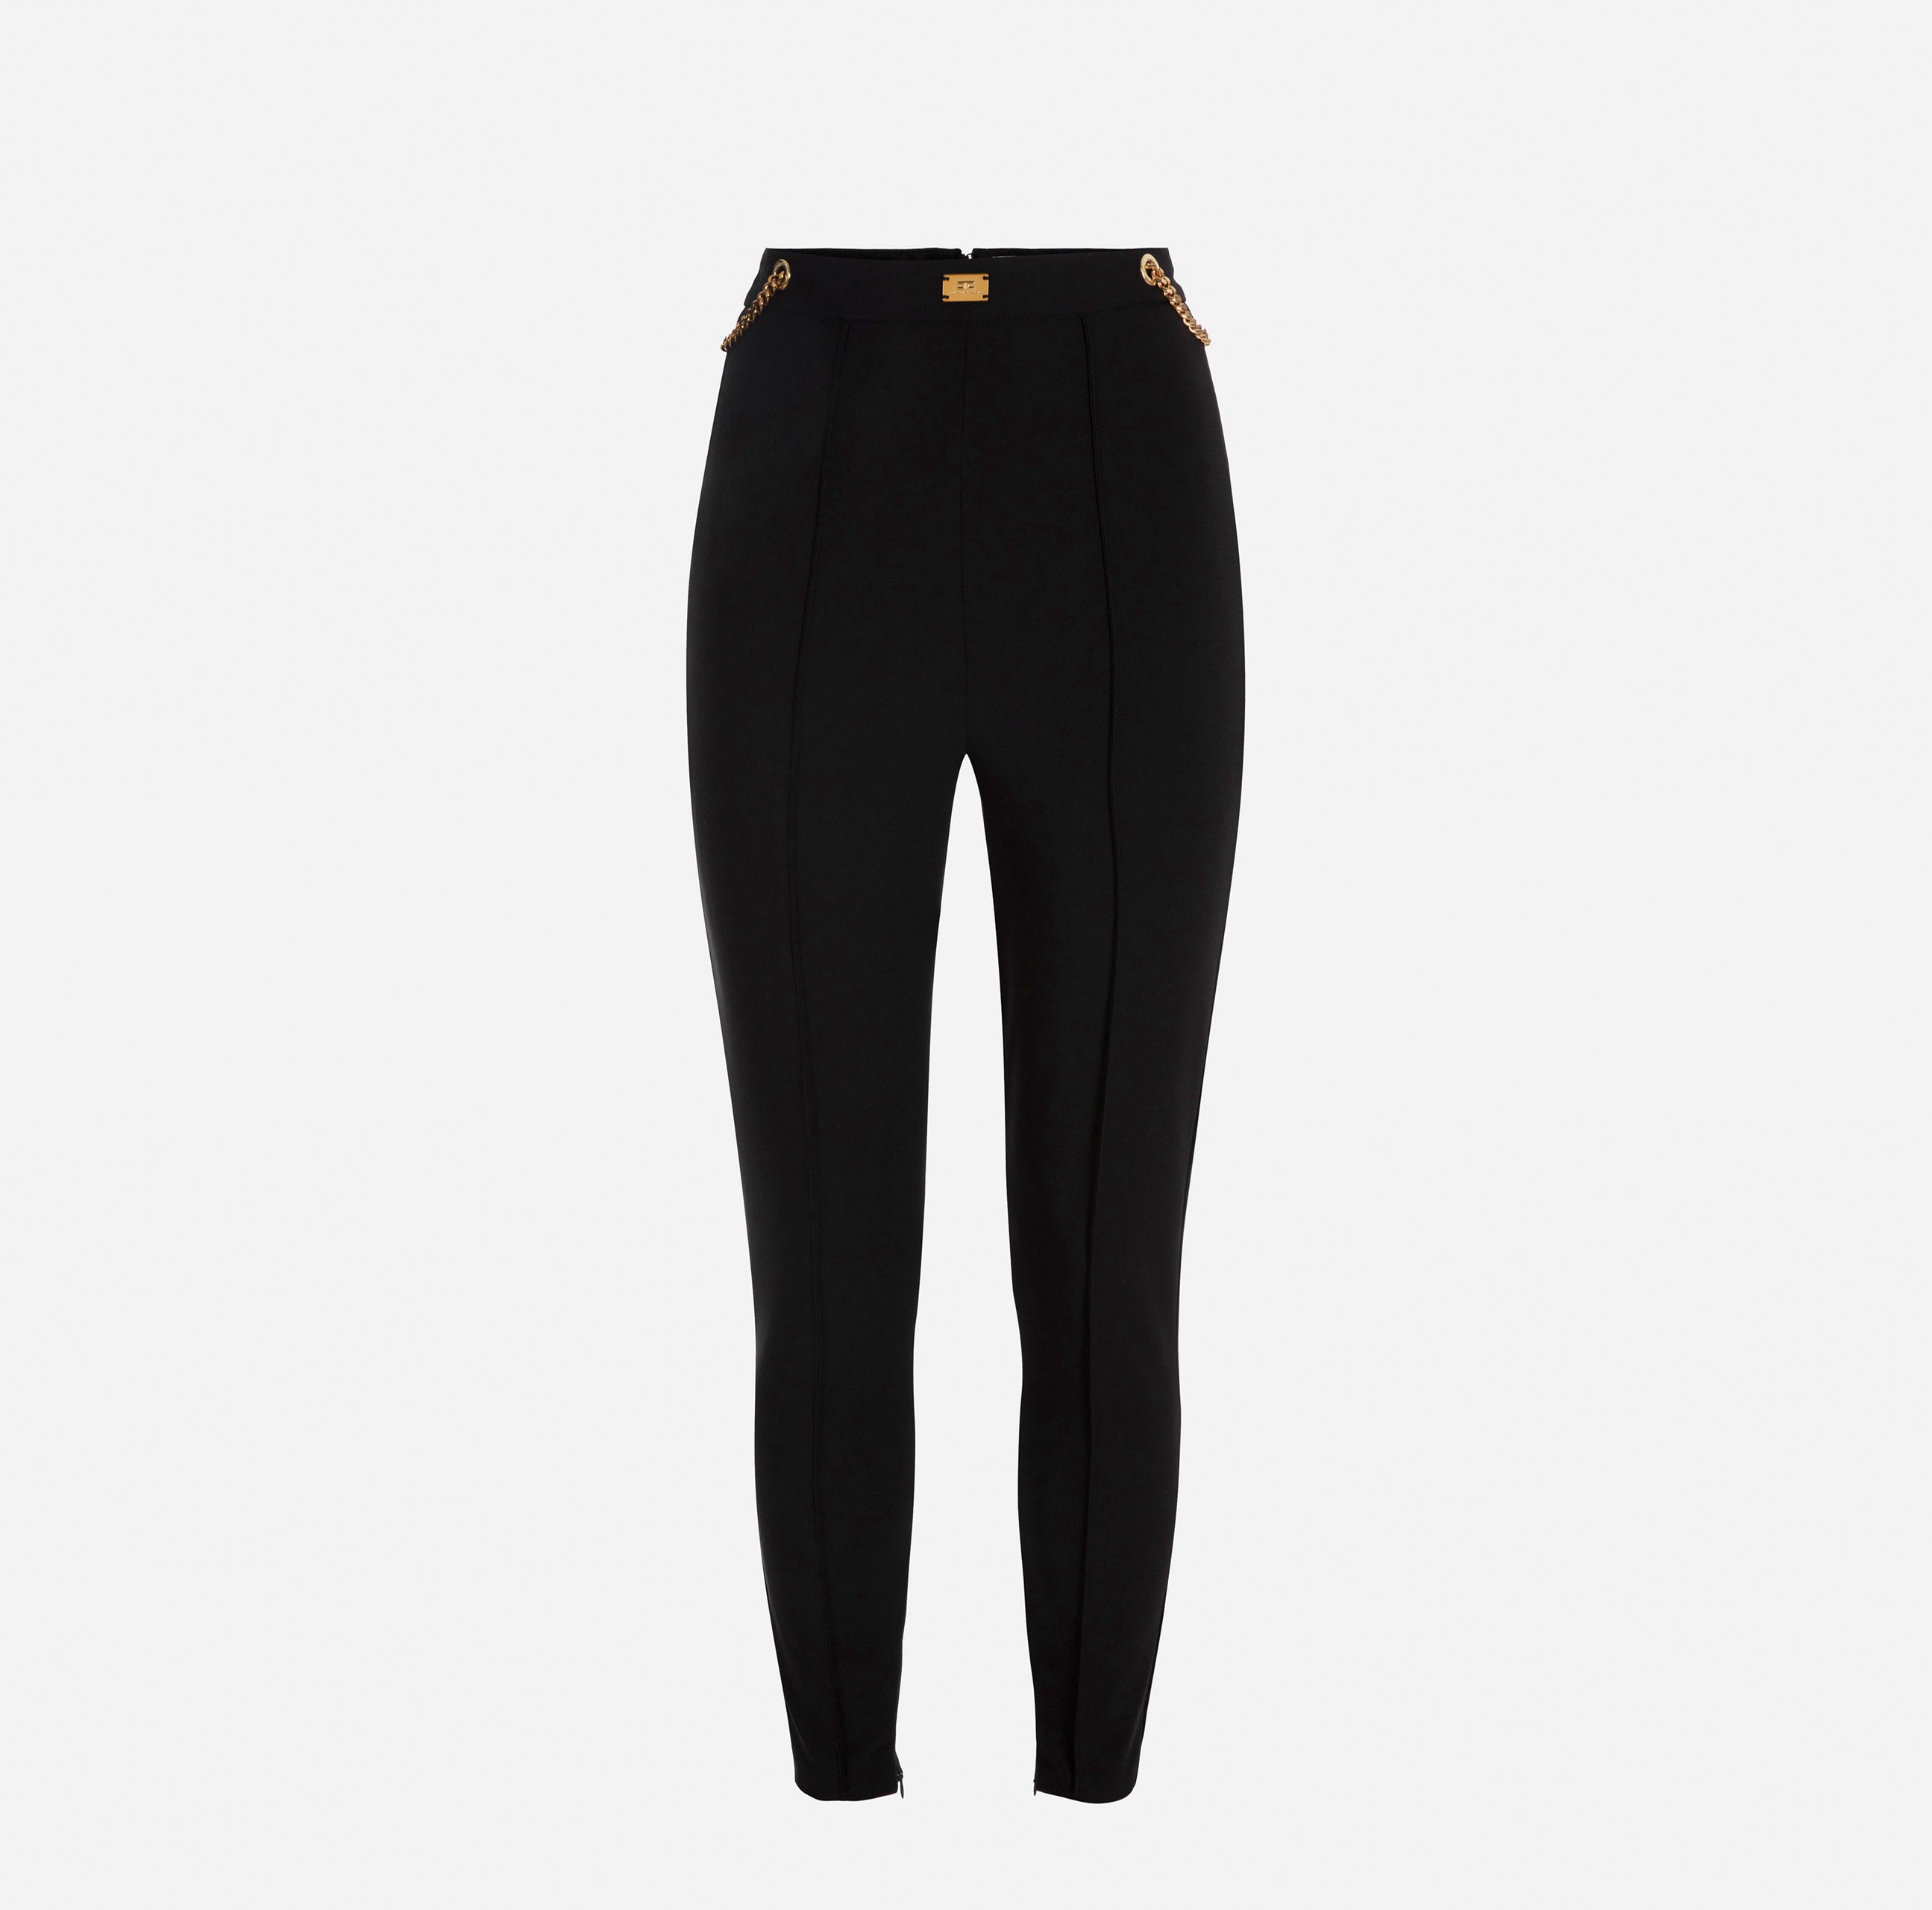 Elisabetta Franchi Women's Trousers PA02036E2 Black